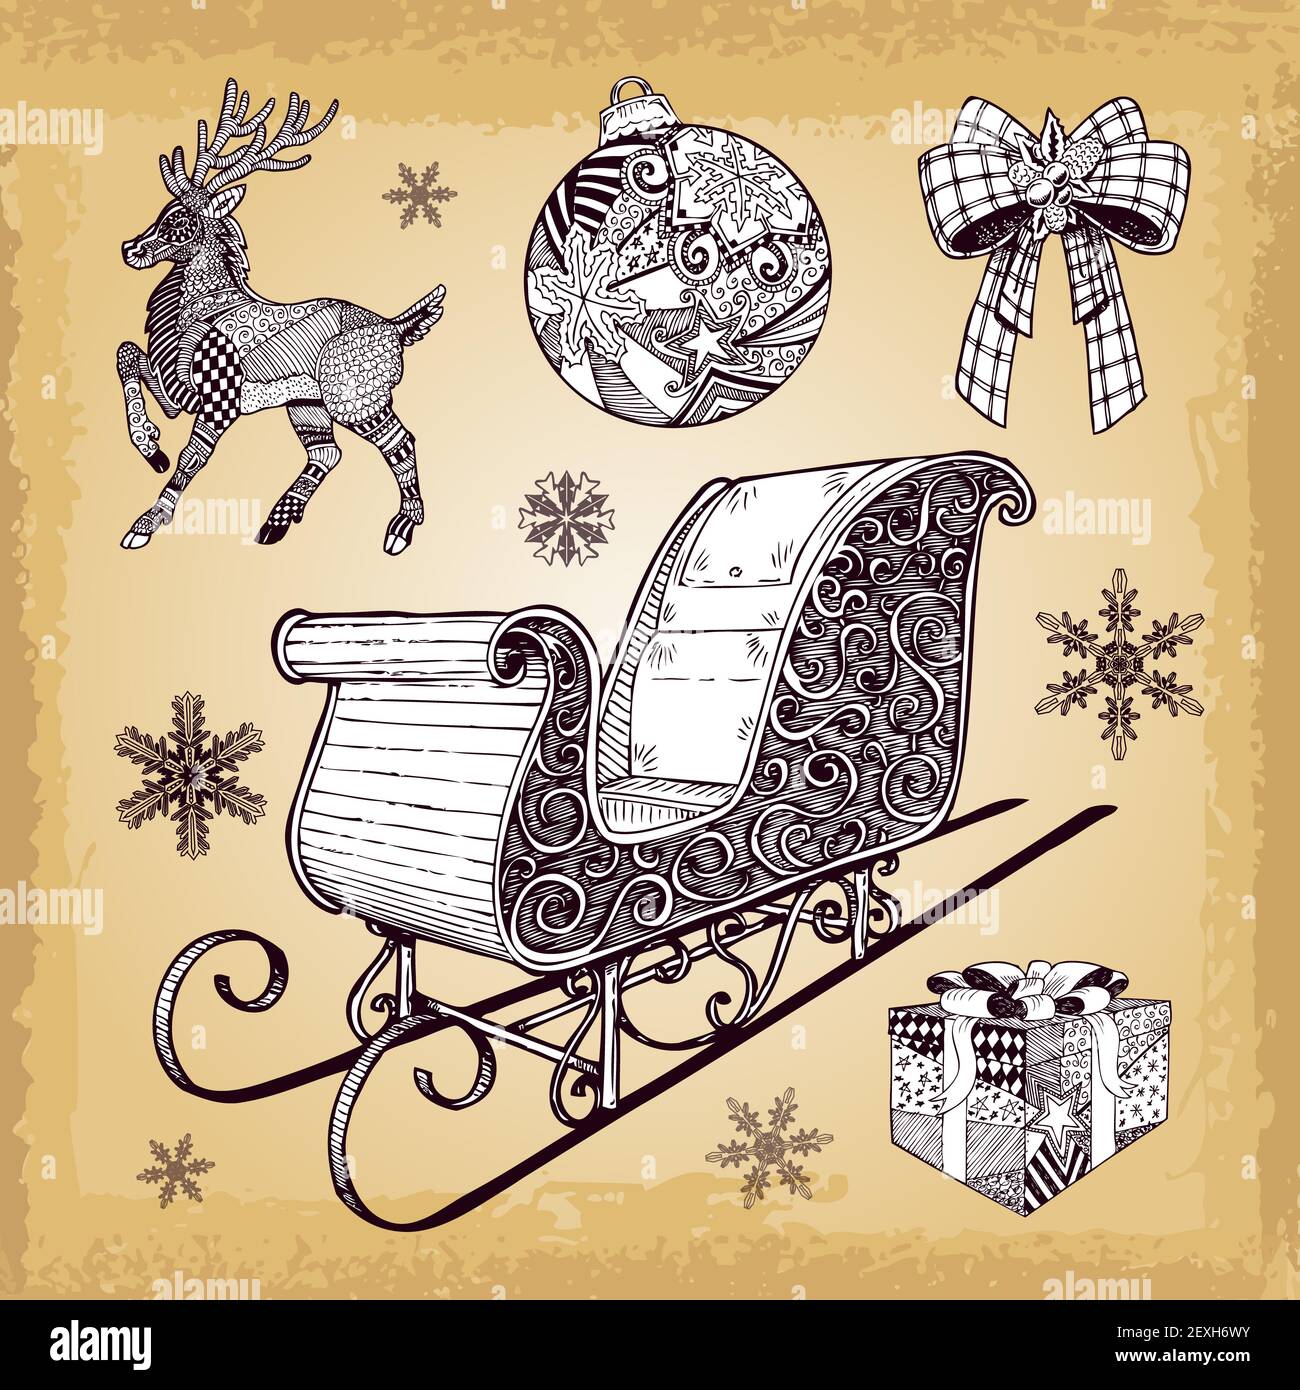 Handgezeichnete Weihnachtsschlittendeko-Kritzeleien Stockfoto